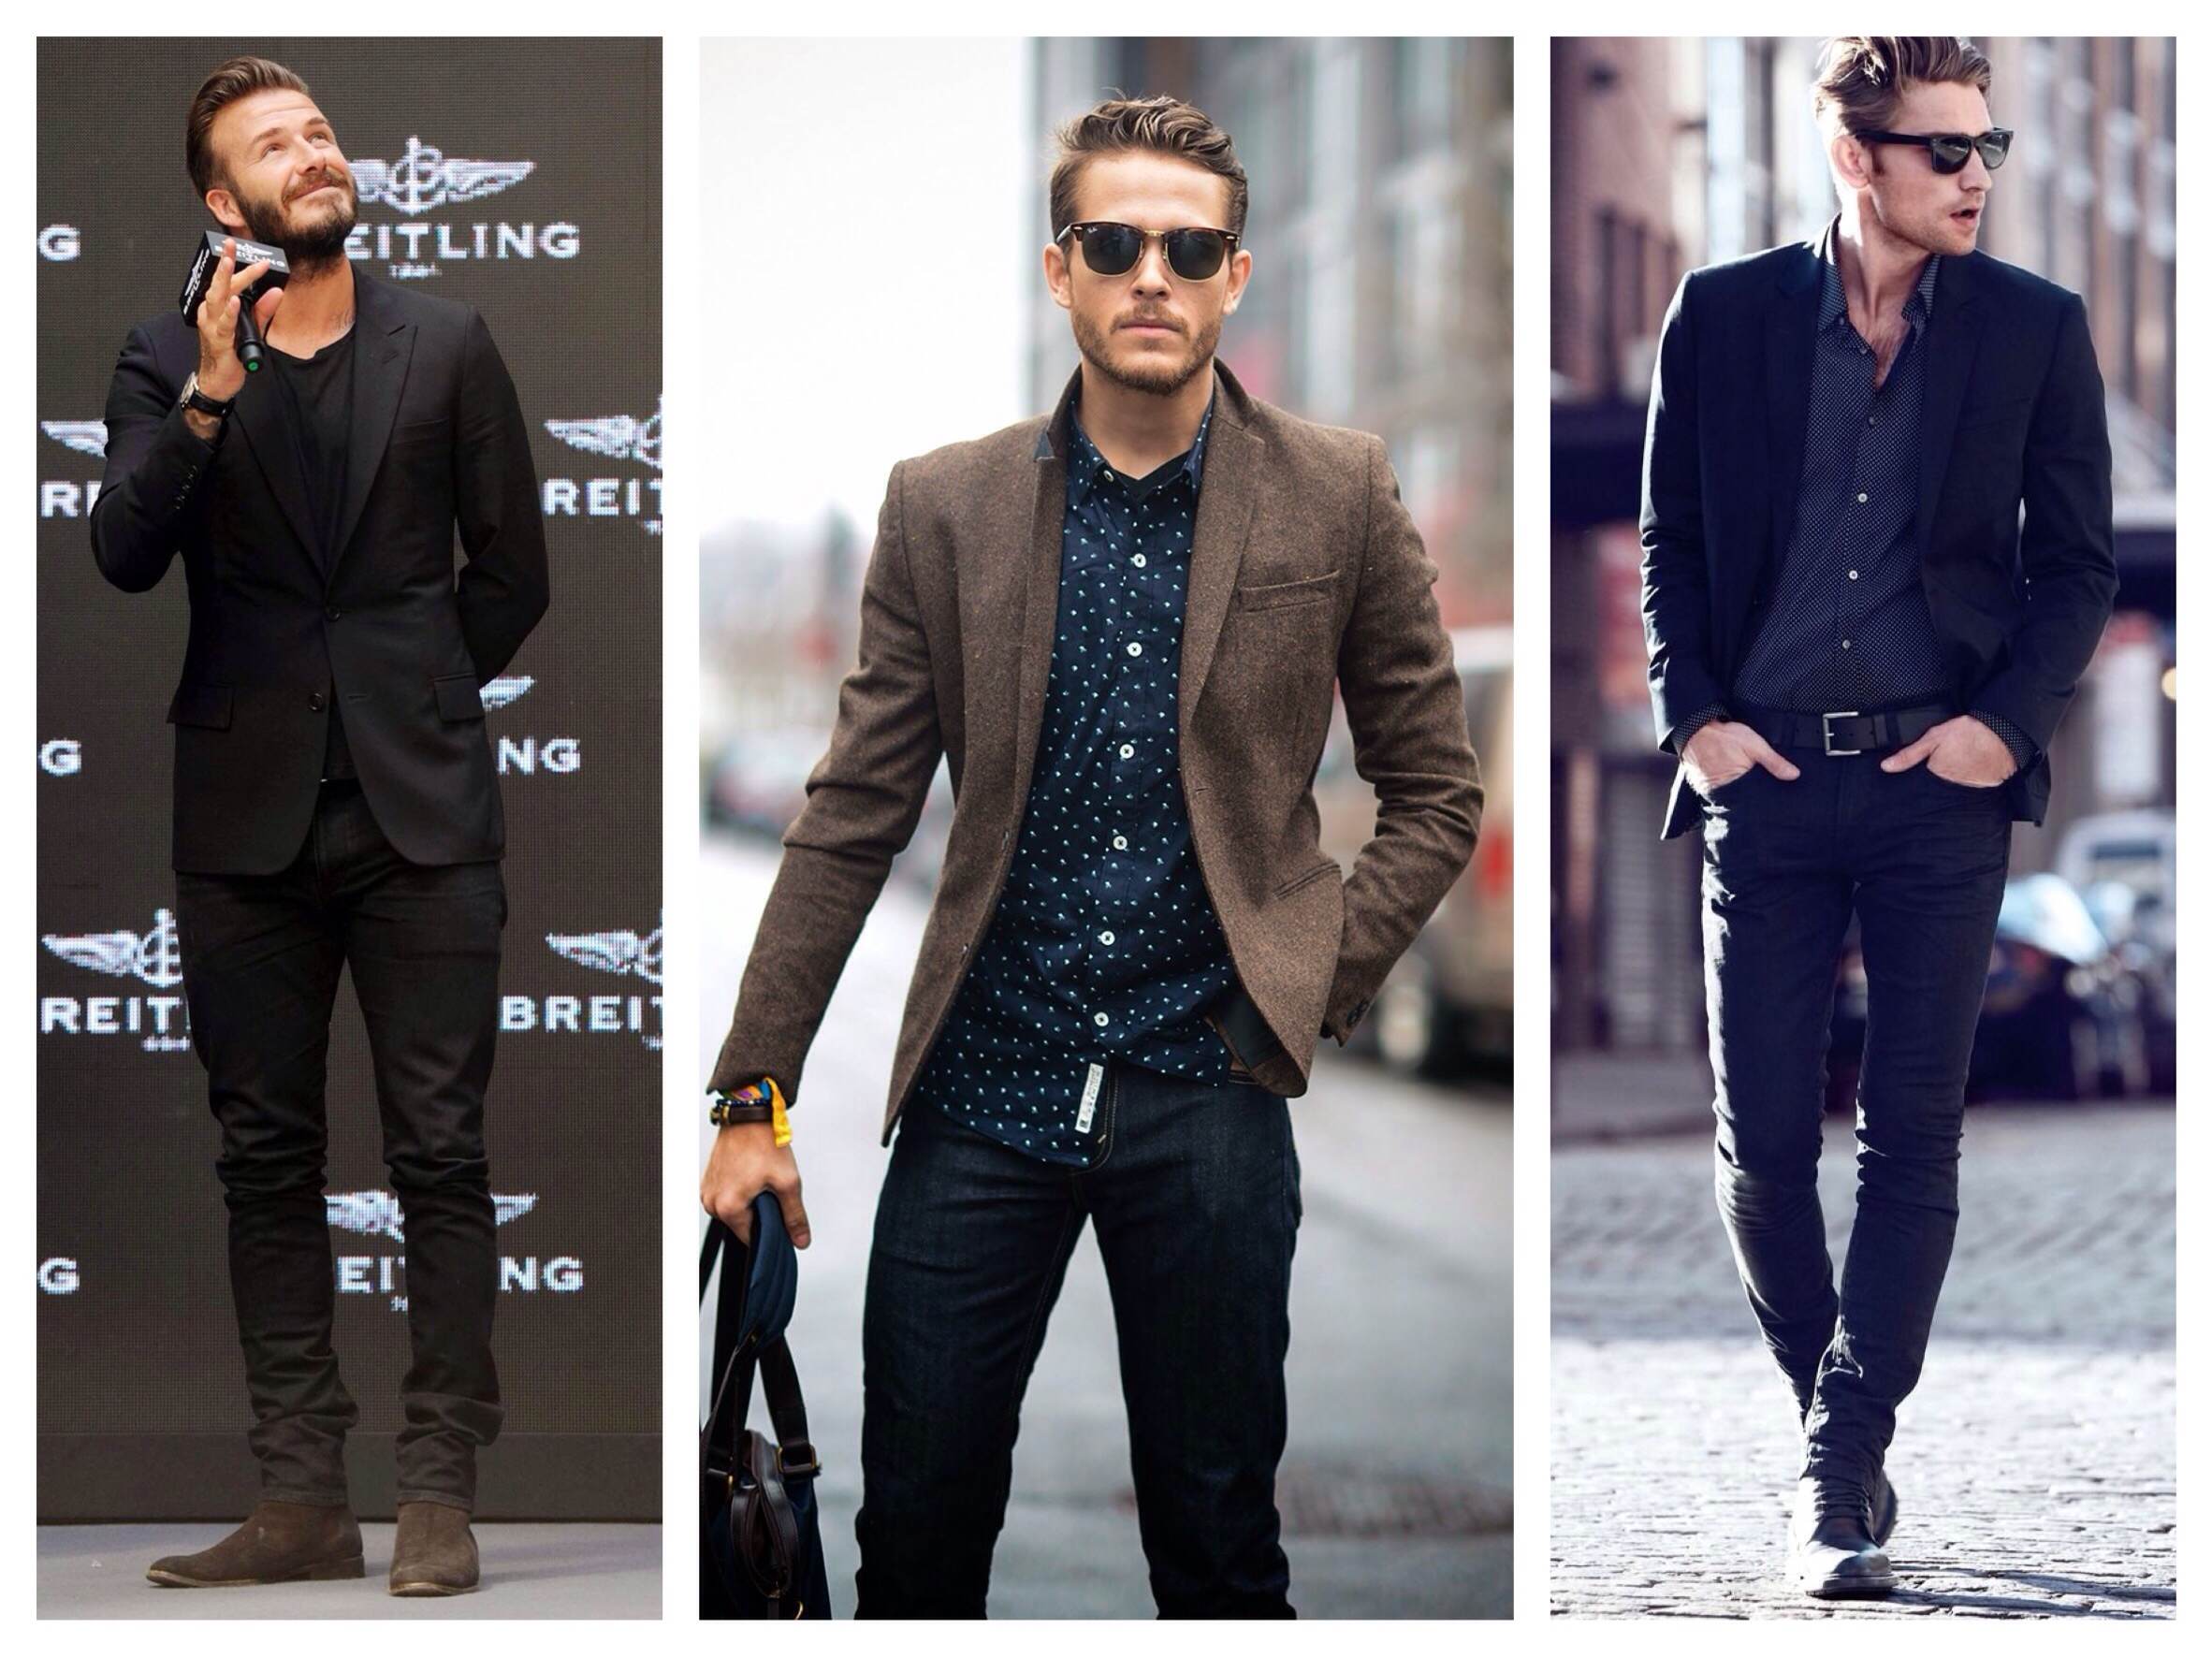 Какие модели пиджаков сочетаются с джинсами, советы стилистов